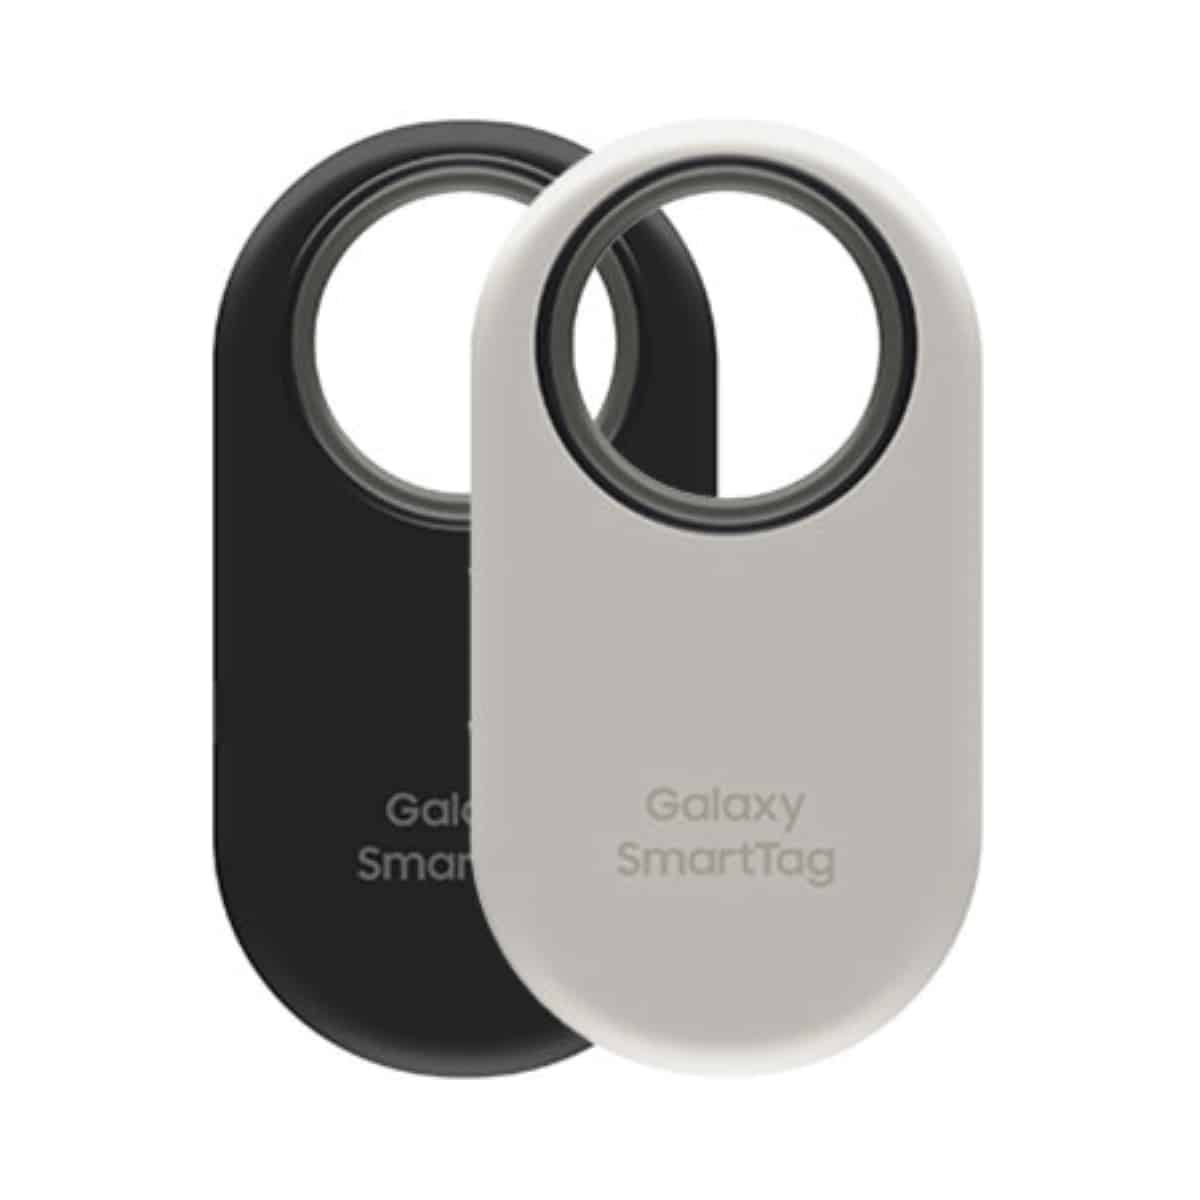 Galaxy SmartTag 2 nouveau design, mais toujours incompatible Google